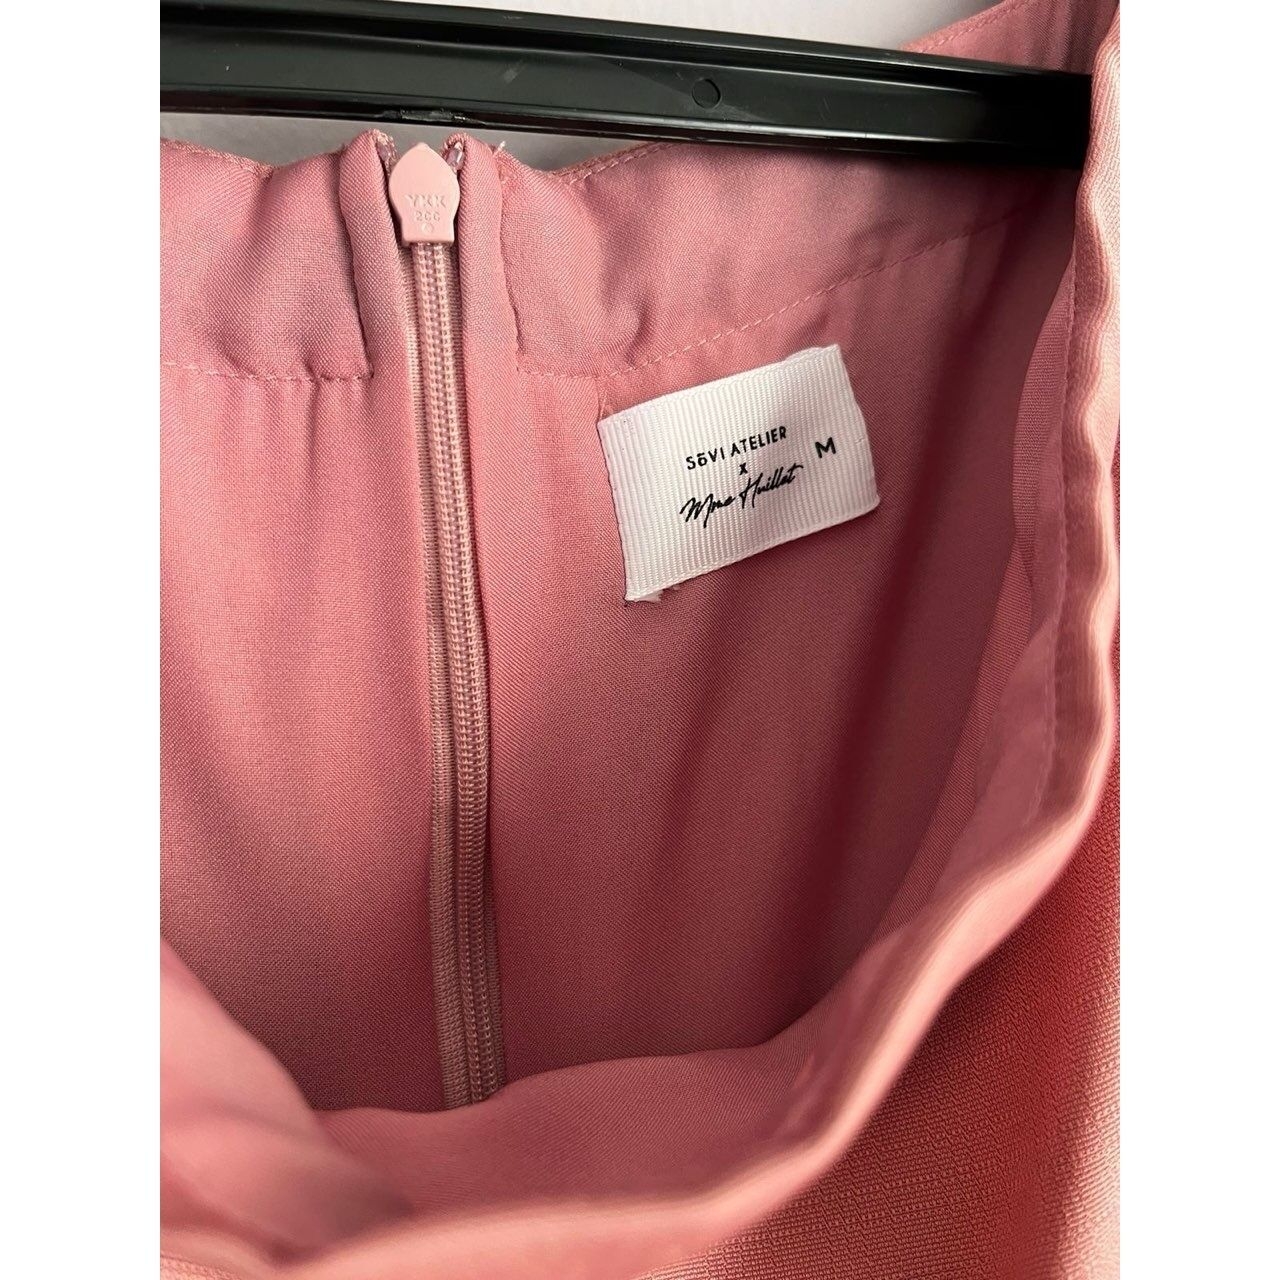 Sovi Atelier Dusty Pink Long Dress